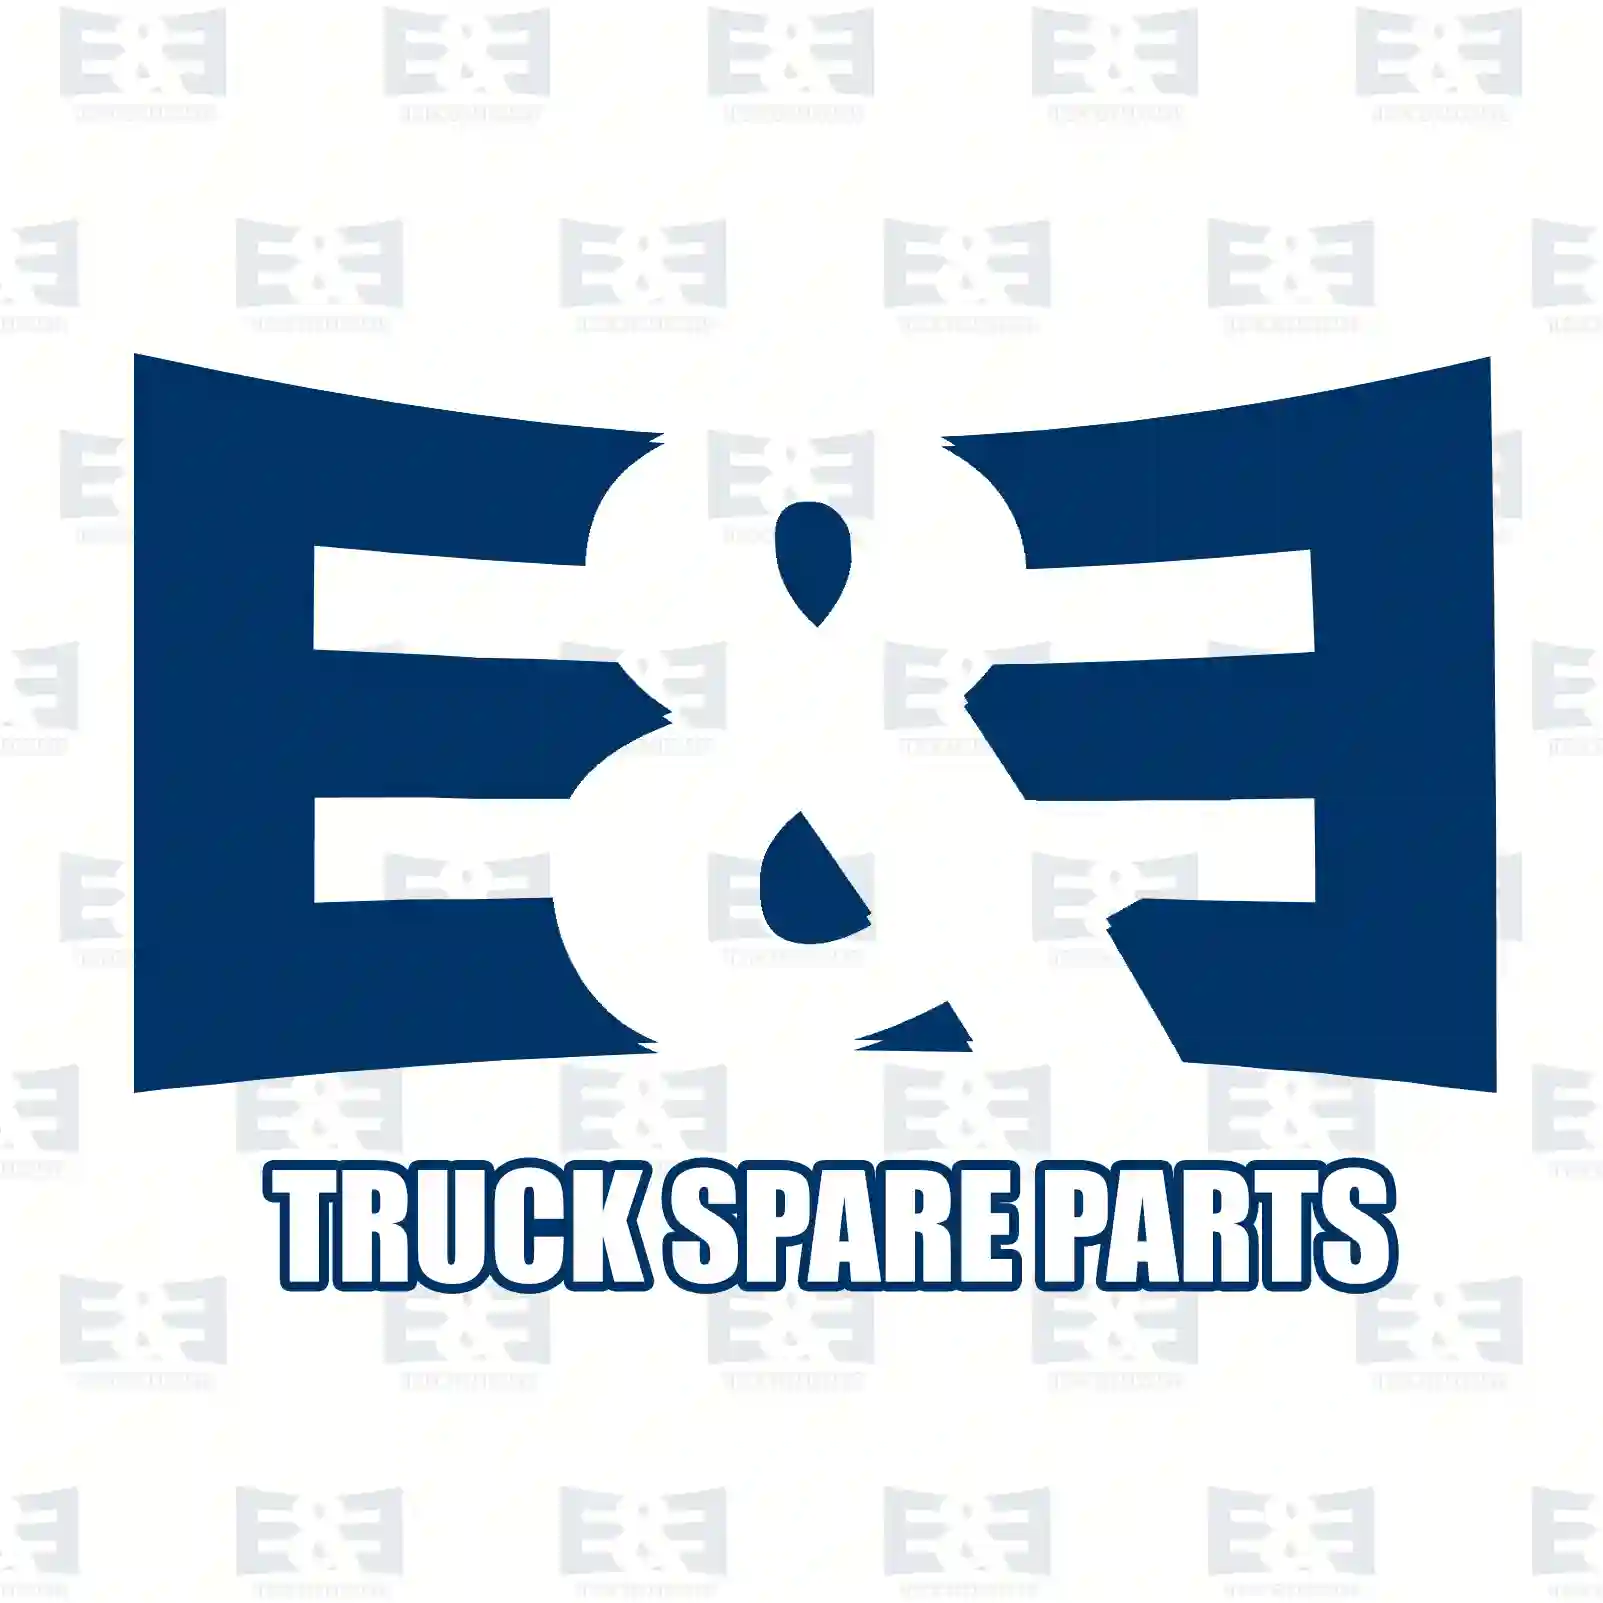 Air dryer cartridge, 2E2295587, [] ||  2E2295587 E&E Truck Spare Parts | Truck Spare Parts, Auotomotive Spare Parts Air dryer cartridge, 2E2295587, [] ||  2E2295587 E&E Truck Spare Parts | Truck Spare Parts, Auotomotive Spare Parts